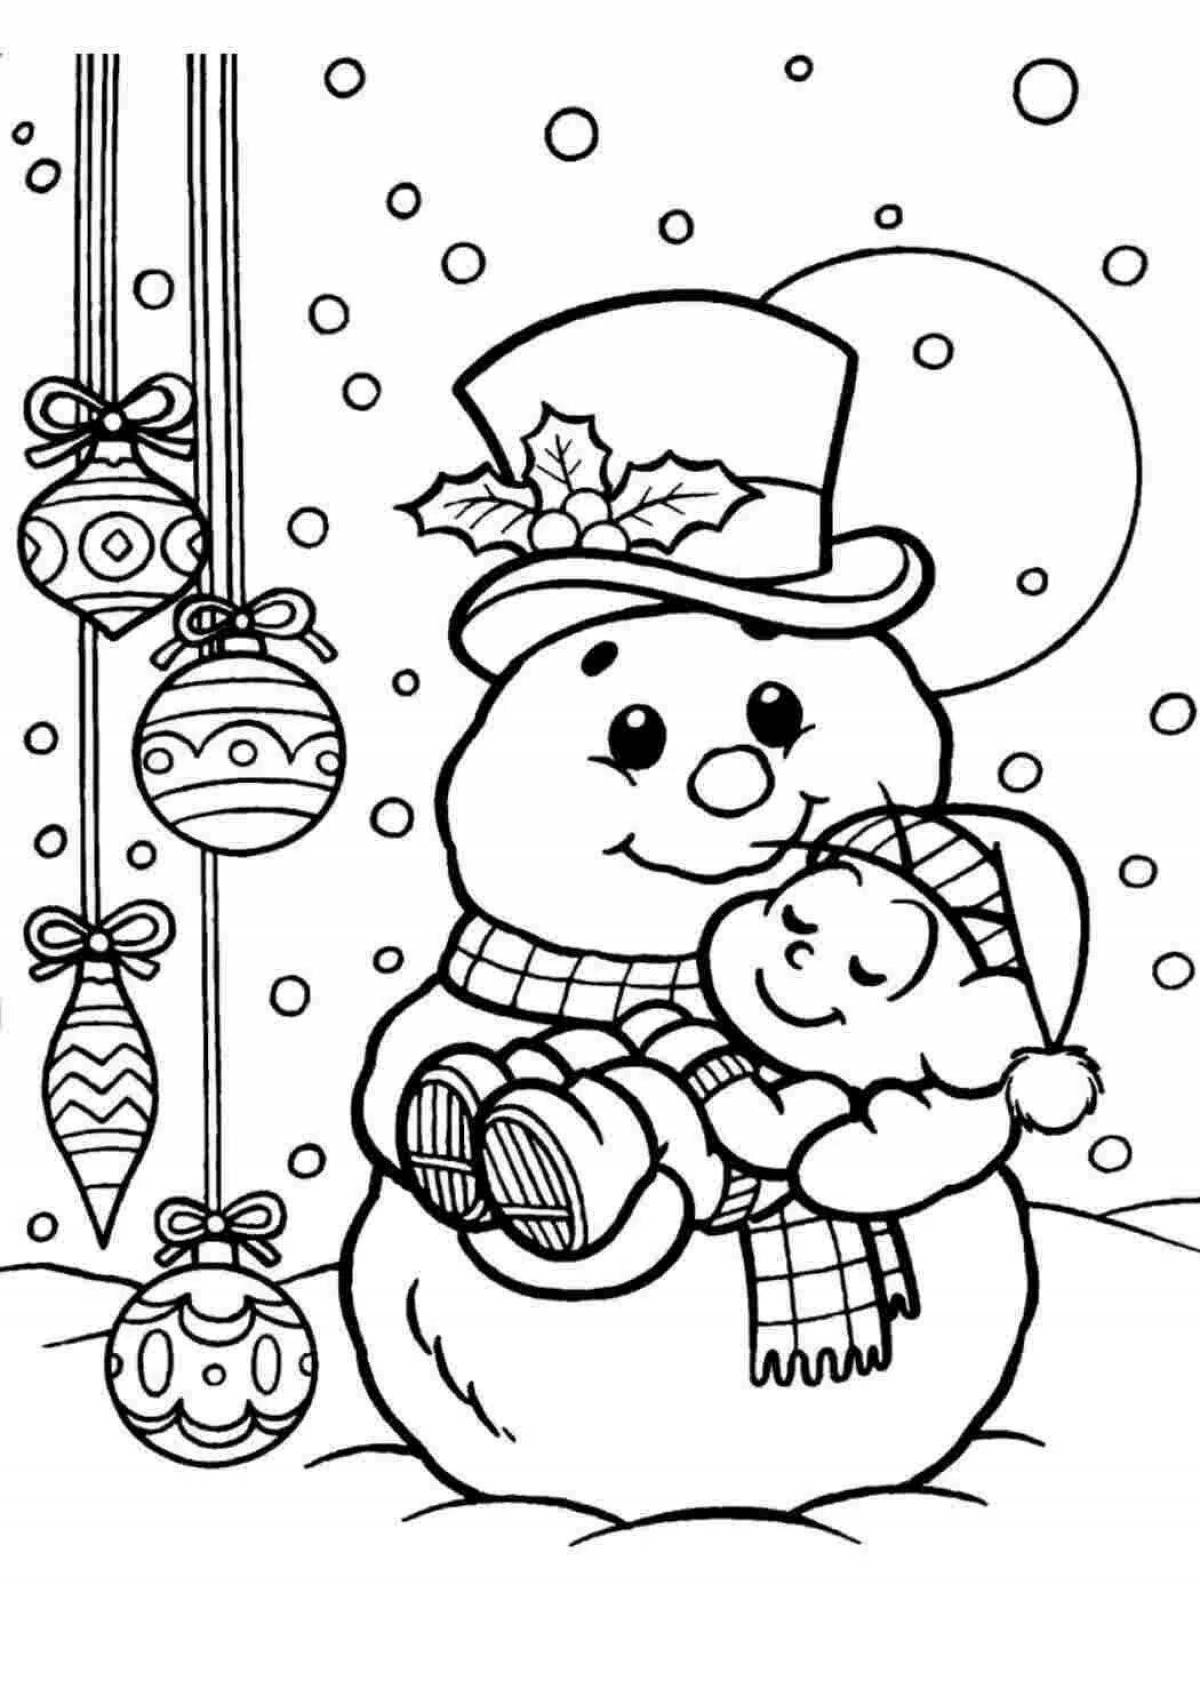 Забавный рисунок снеговика для детей